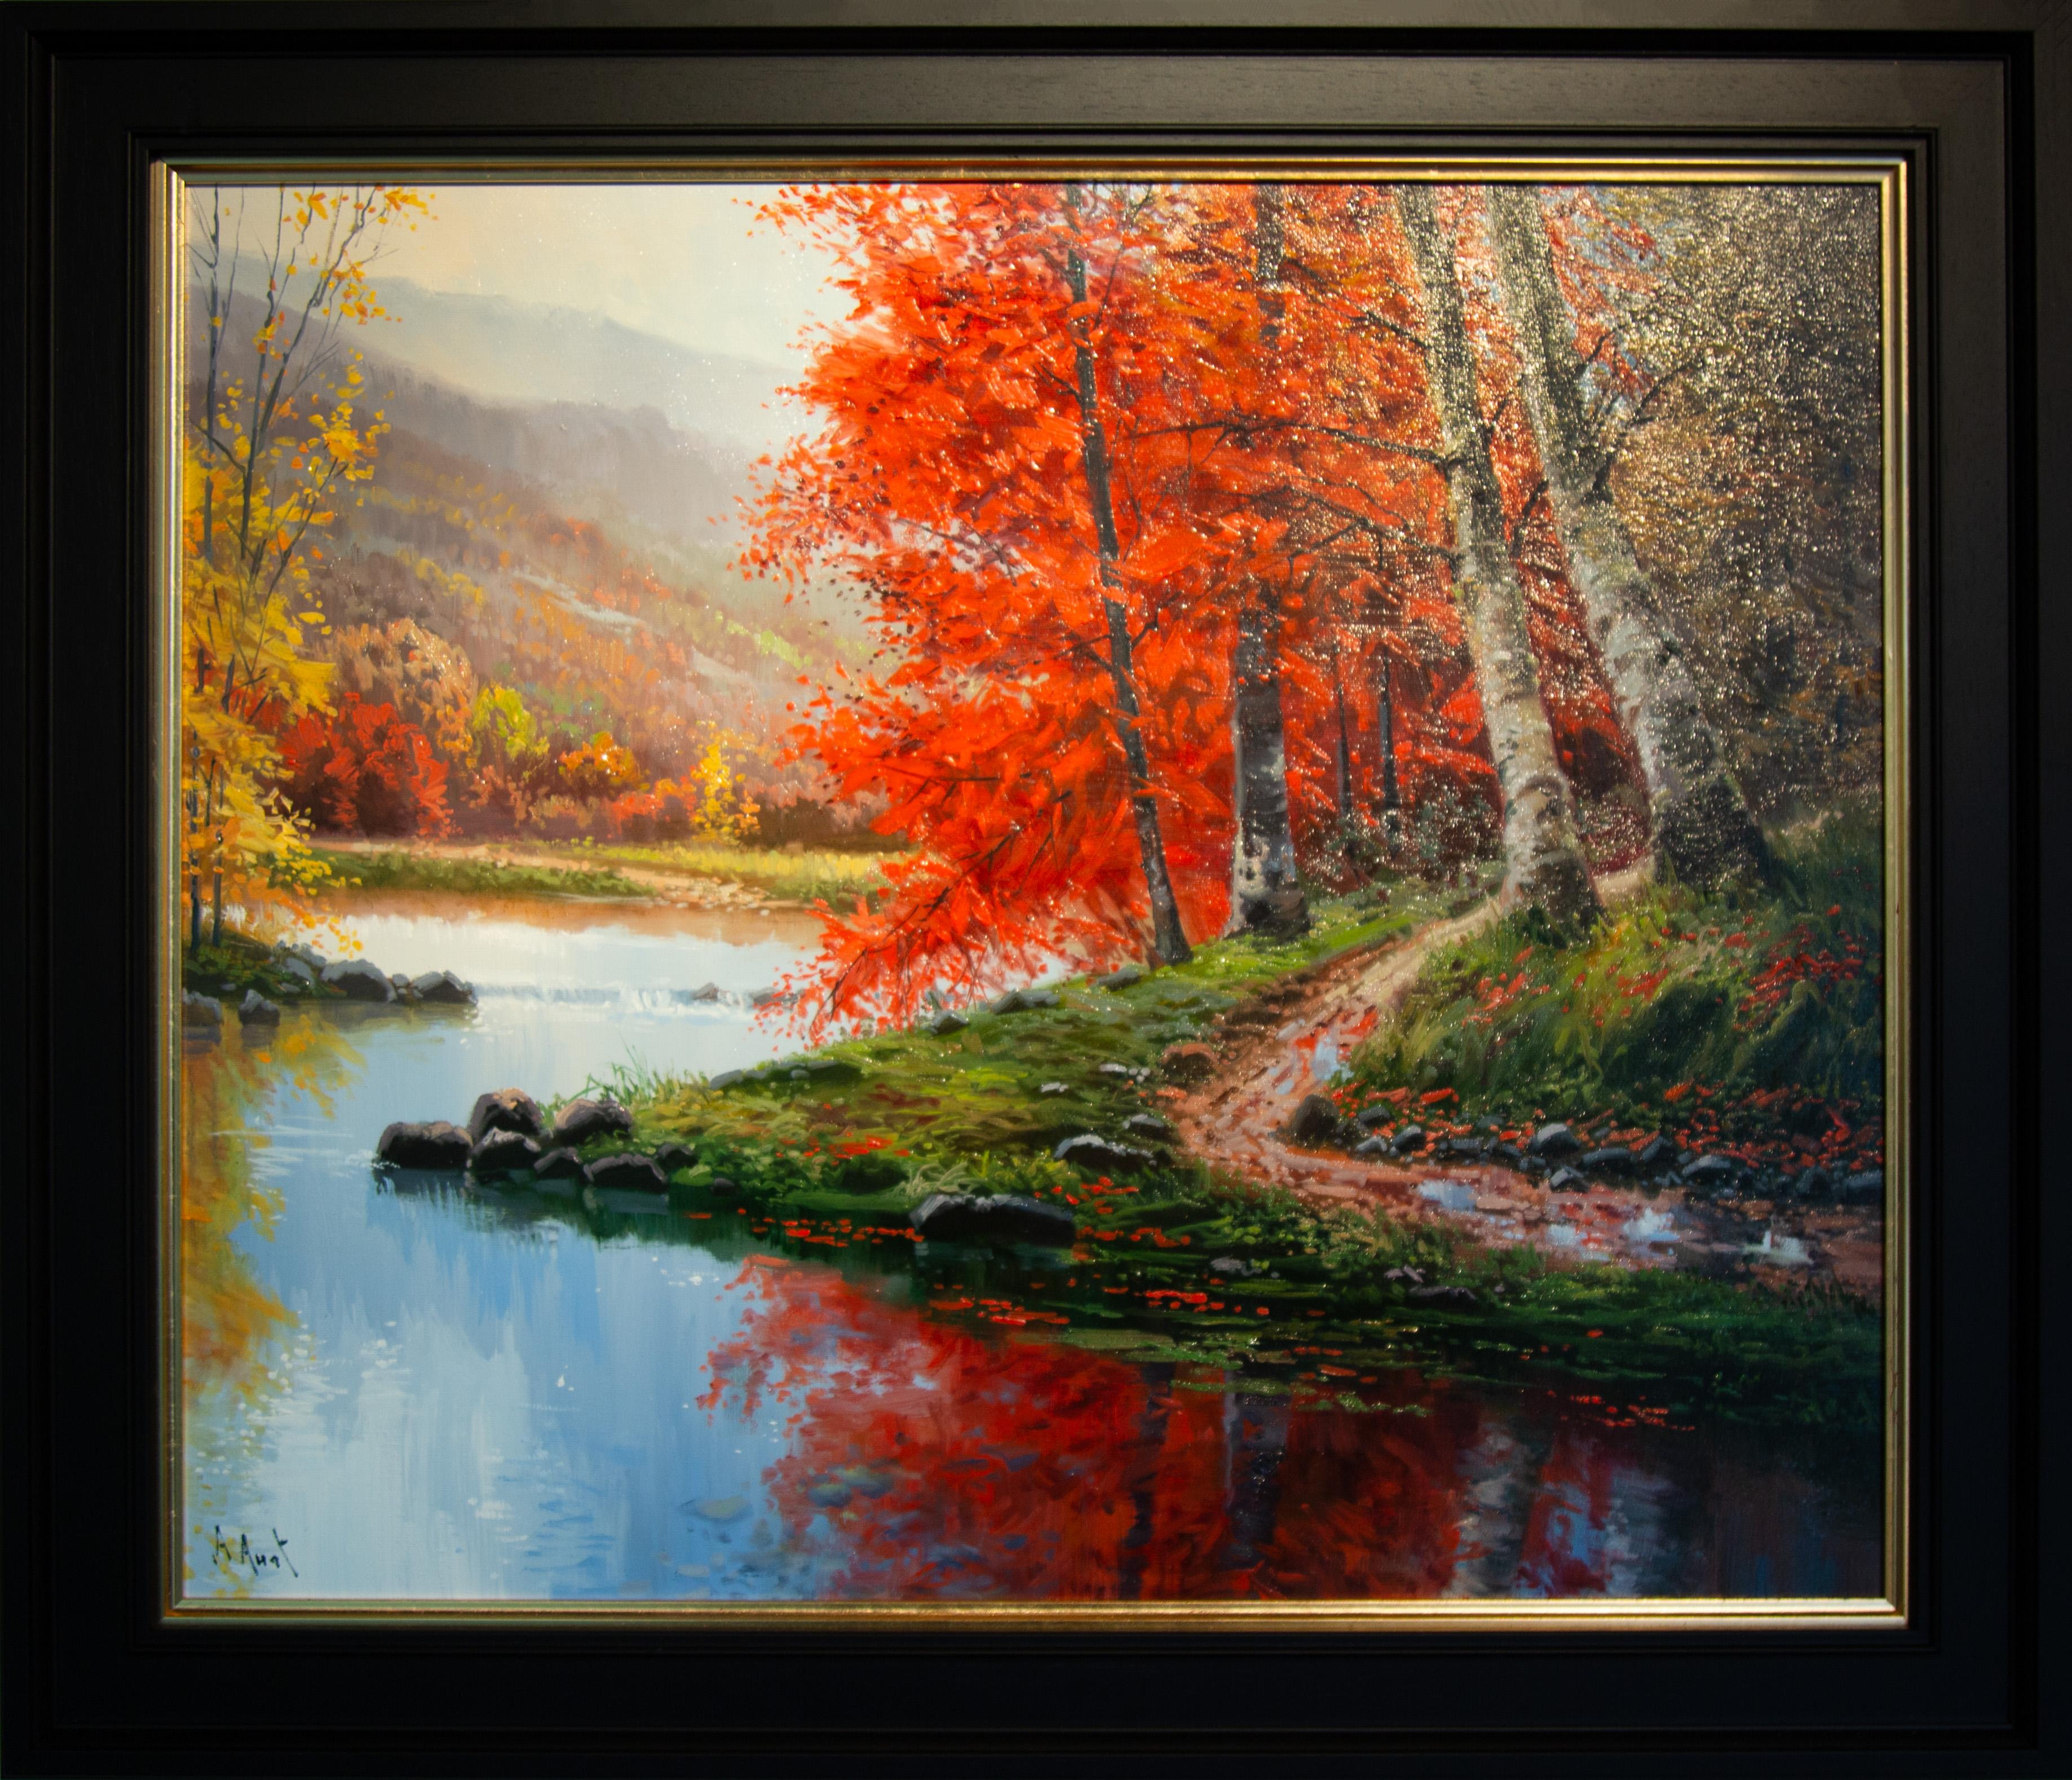 Landscape Painting Amal Amatt - A Winter Walk" Peinture impressionniste contemporaine représentant des bois, des arbres, une rivière et du rouge.